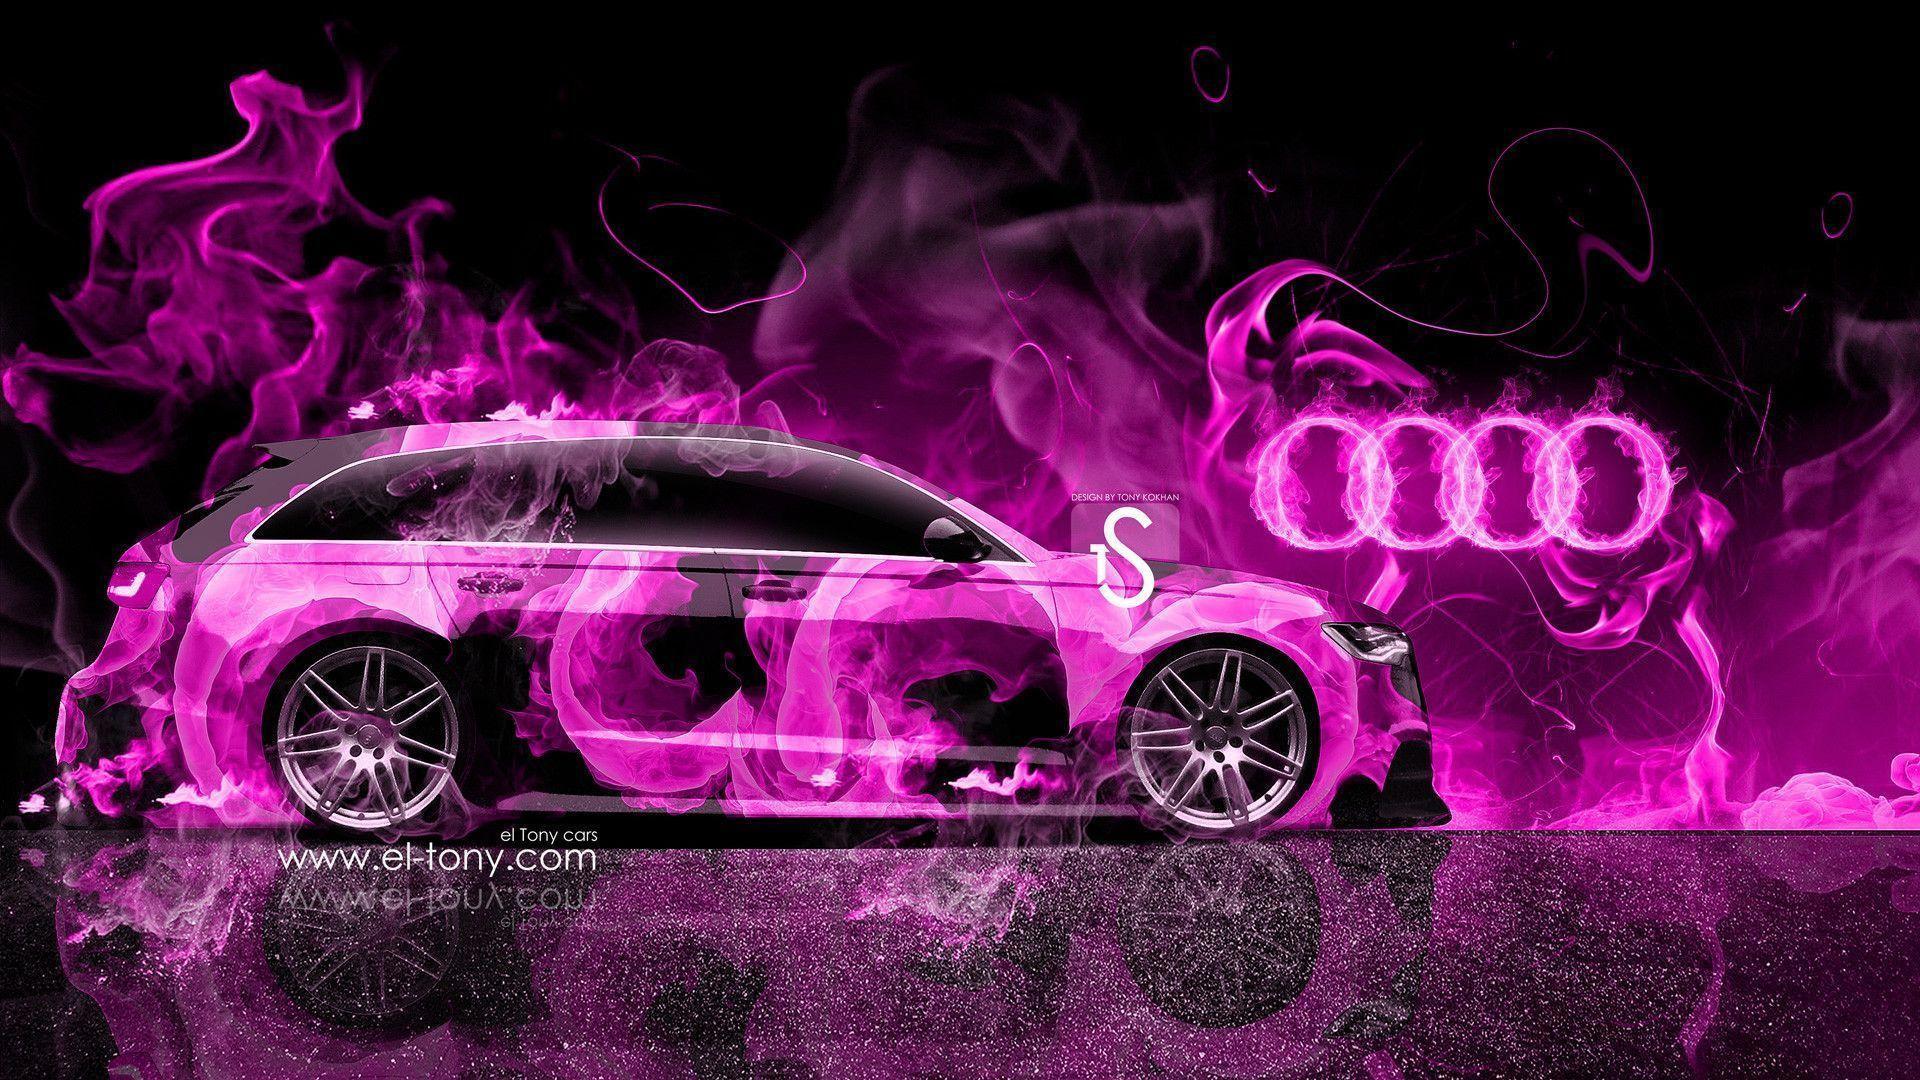 Audi A6 Avant Quattro Fire Car Mika Jumisko 2014 Wallpaper « el Tony